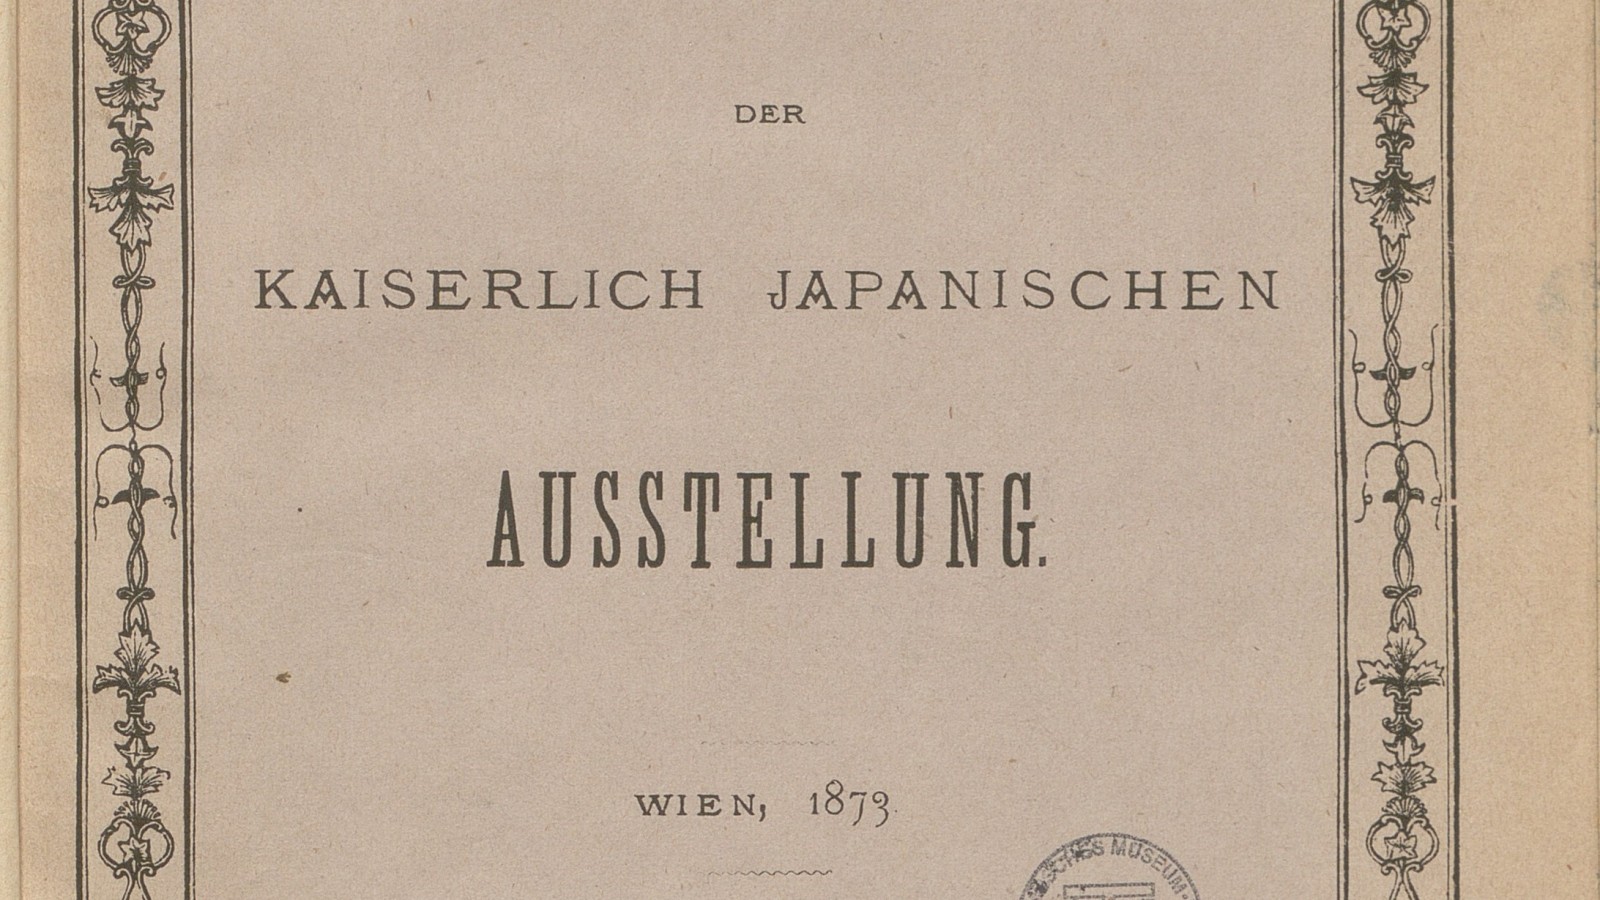 Katalog der kaiserlich japanischen Ausstellung, Wien 1873